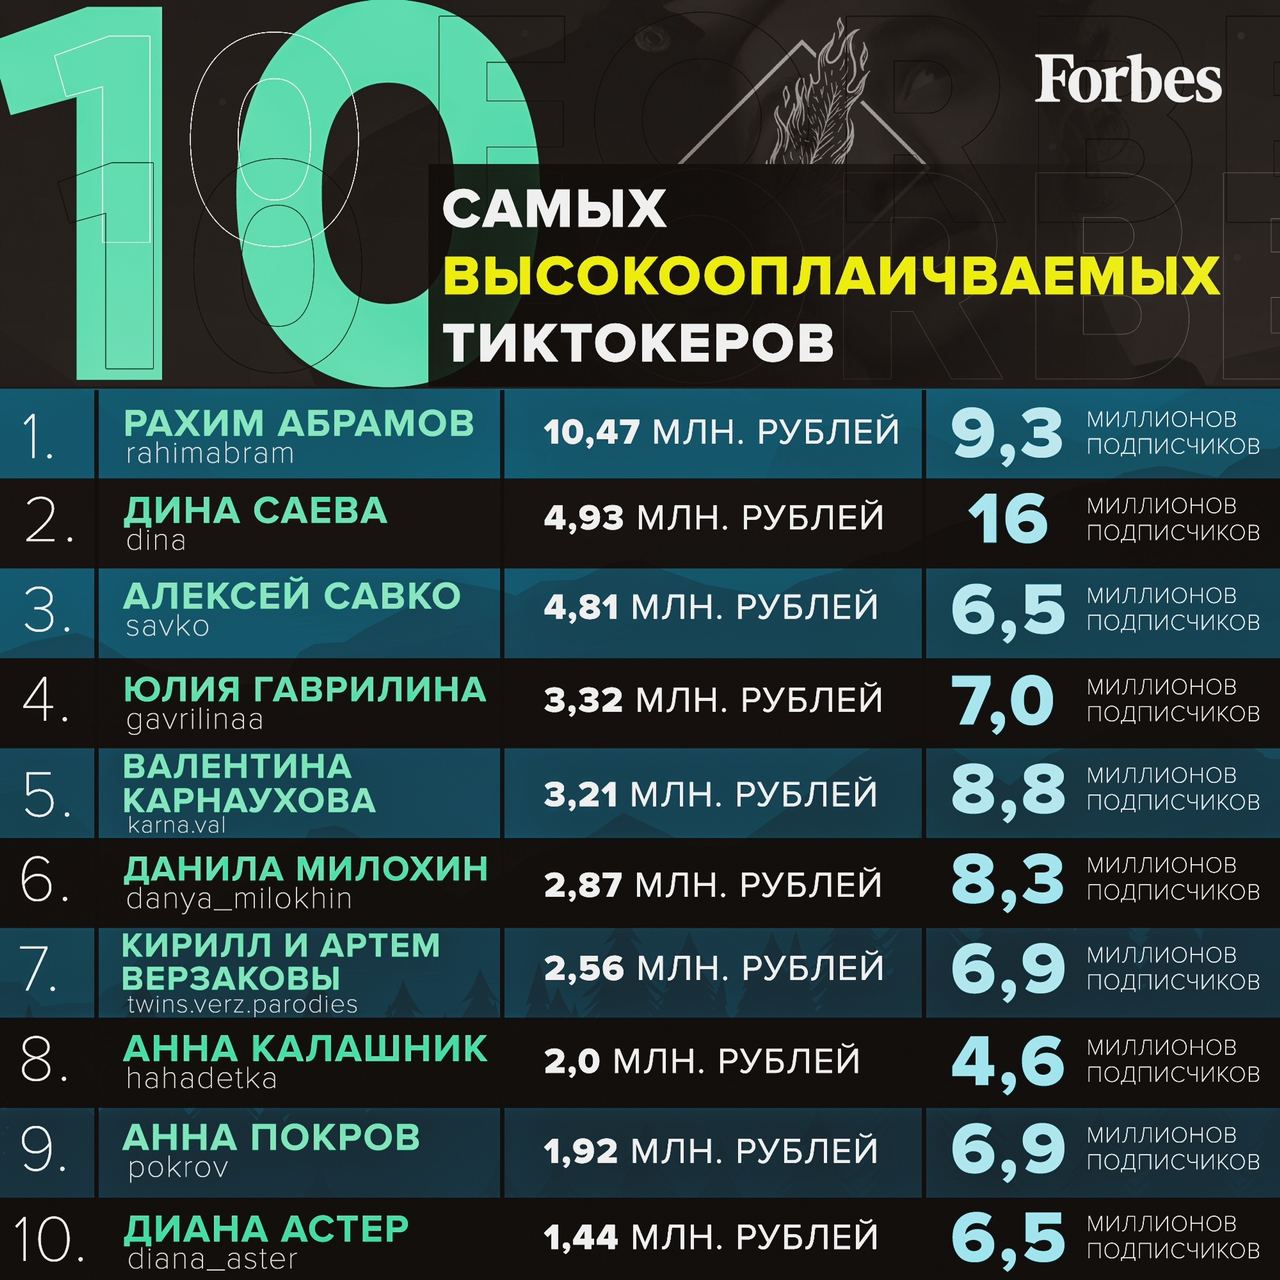 Сколько получают за миллион. Самых высокооплачиваемых тиктокеров. Форбс тиктокеры. Тик токеры России самые высокооплачиваемые тиктокеры. Forbes список самых богатых тиктокеров.